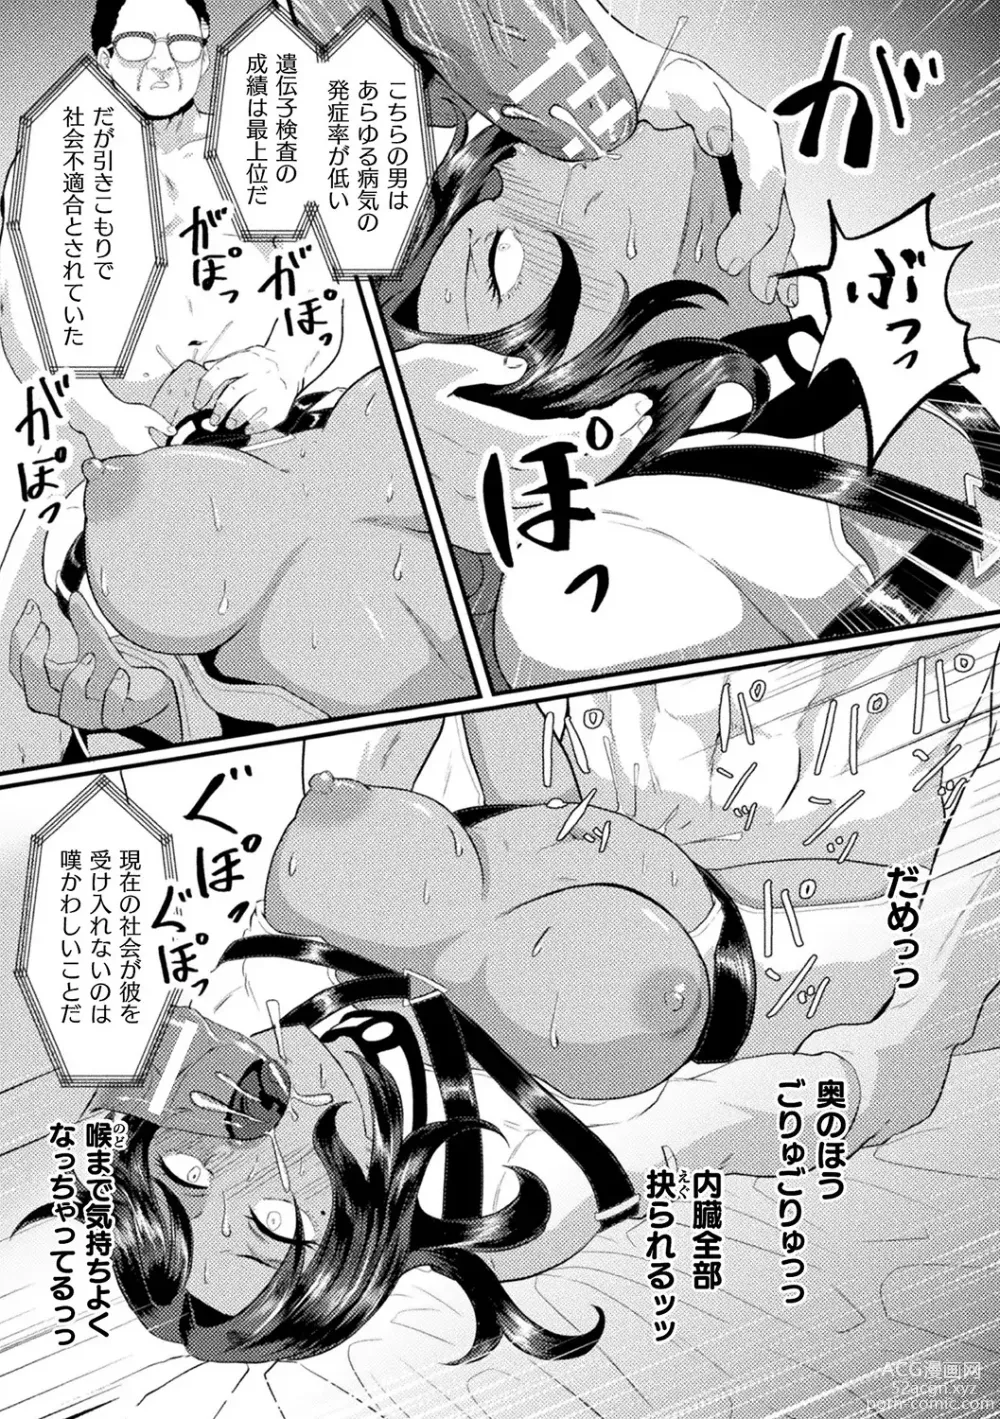 Page 13 of manga Bessatsu Comic Unreal AI ni Wakaraserareru Jinrui Hen Vol. 2